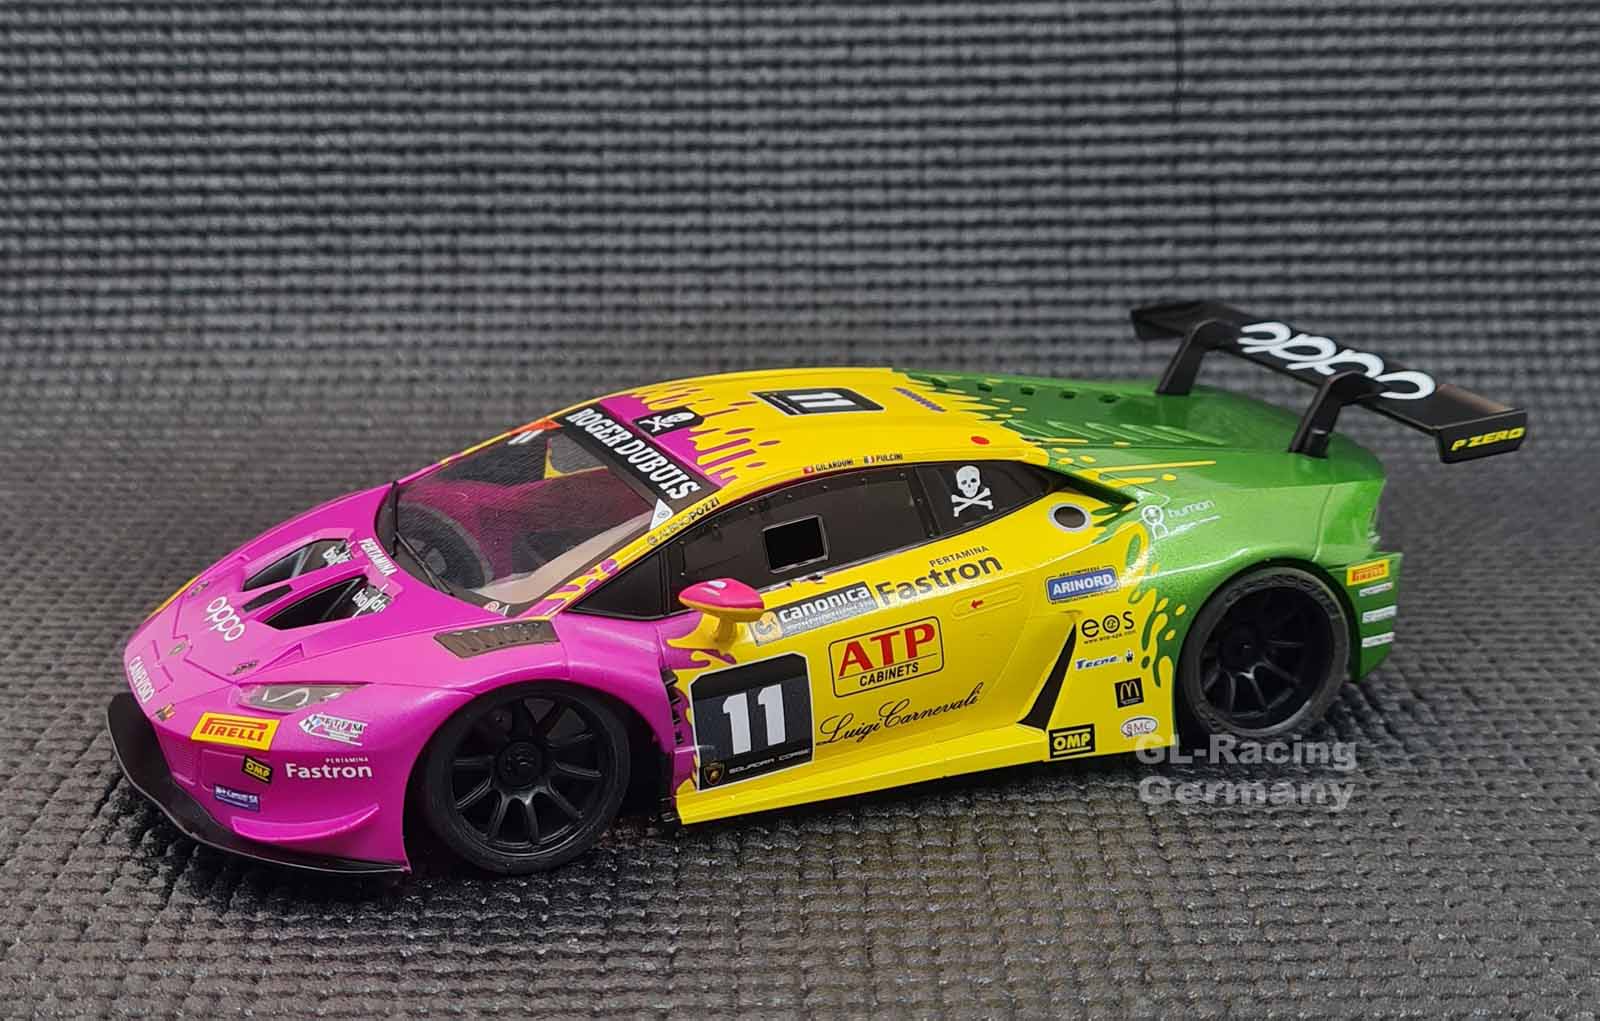 GL-Racing | GL-LBO-GT3-008| 1/28 GL Lamborghini GT3 body 008 purple／yellow